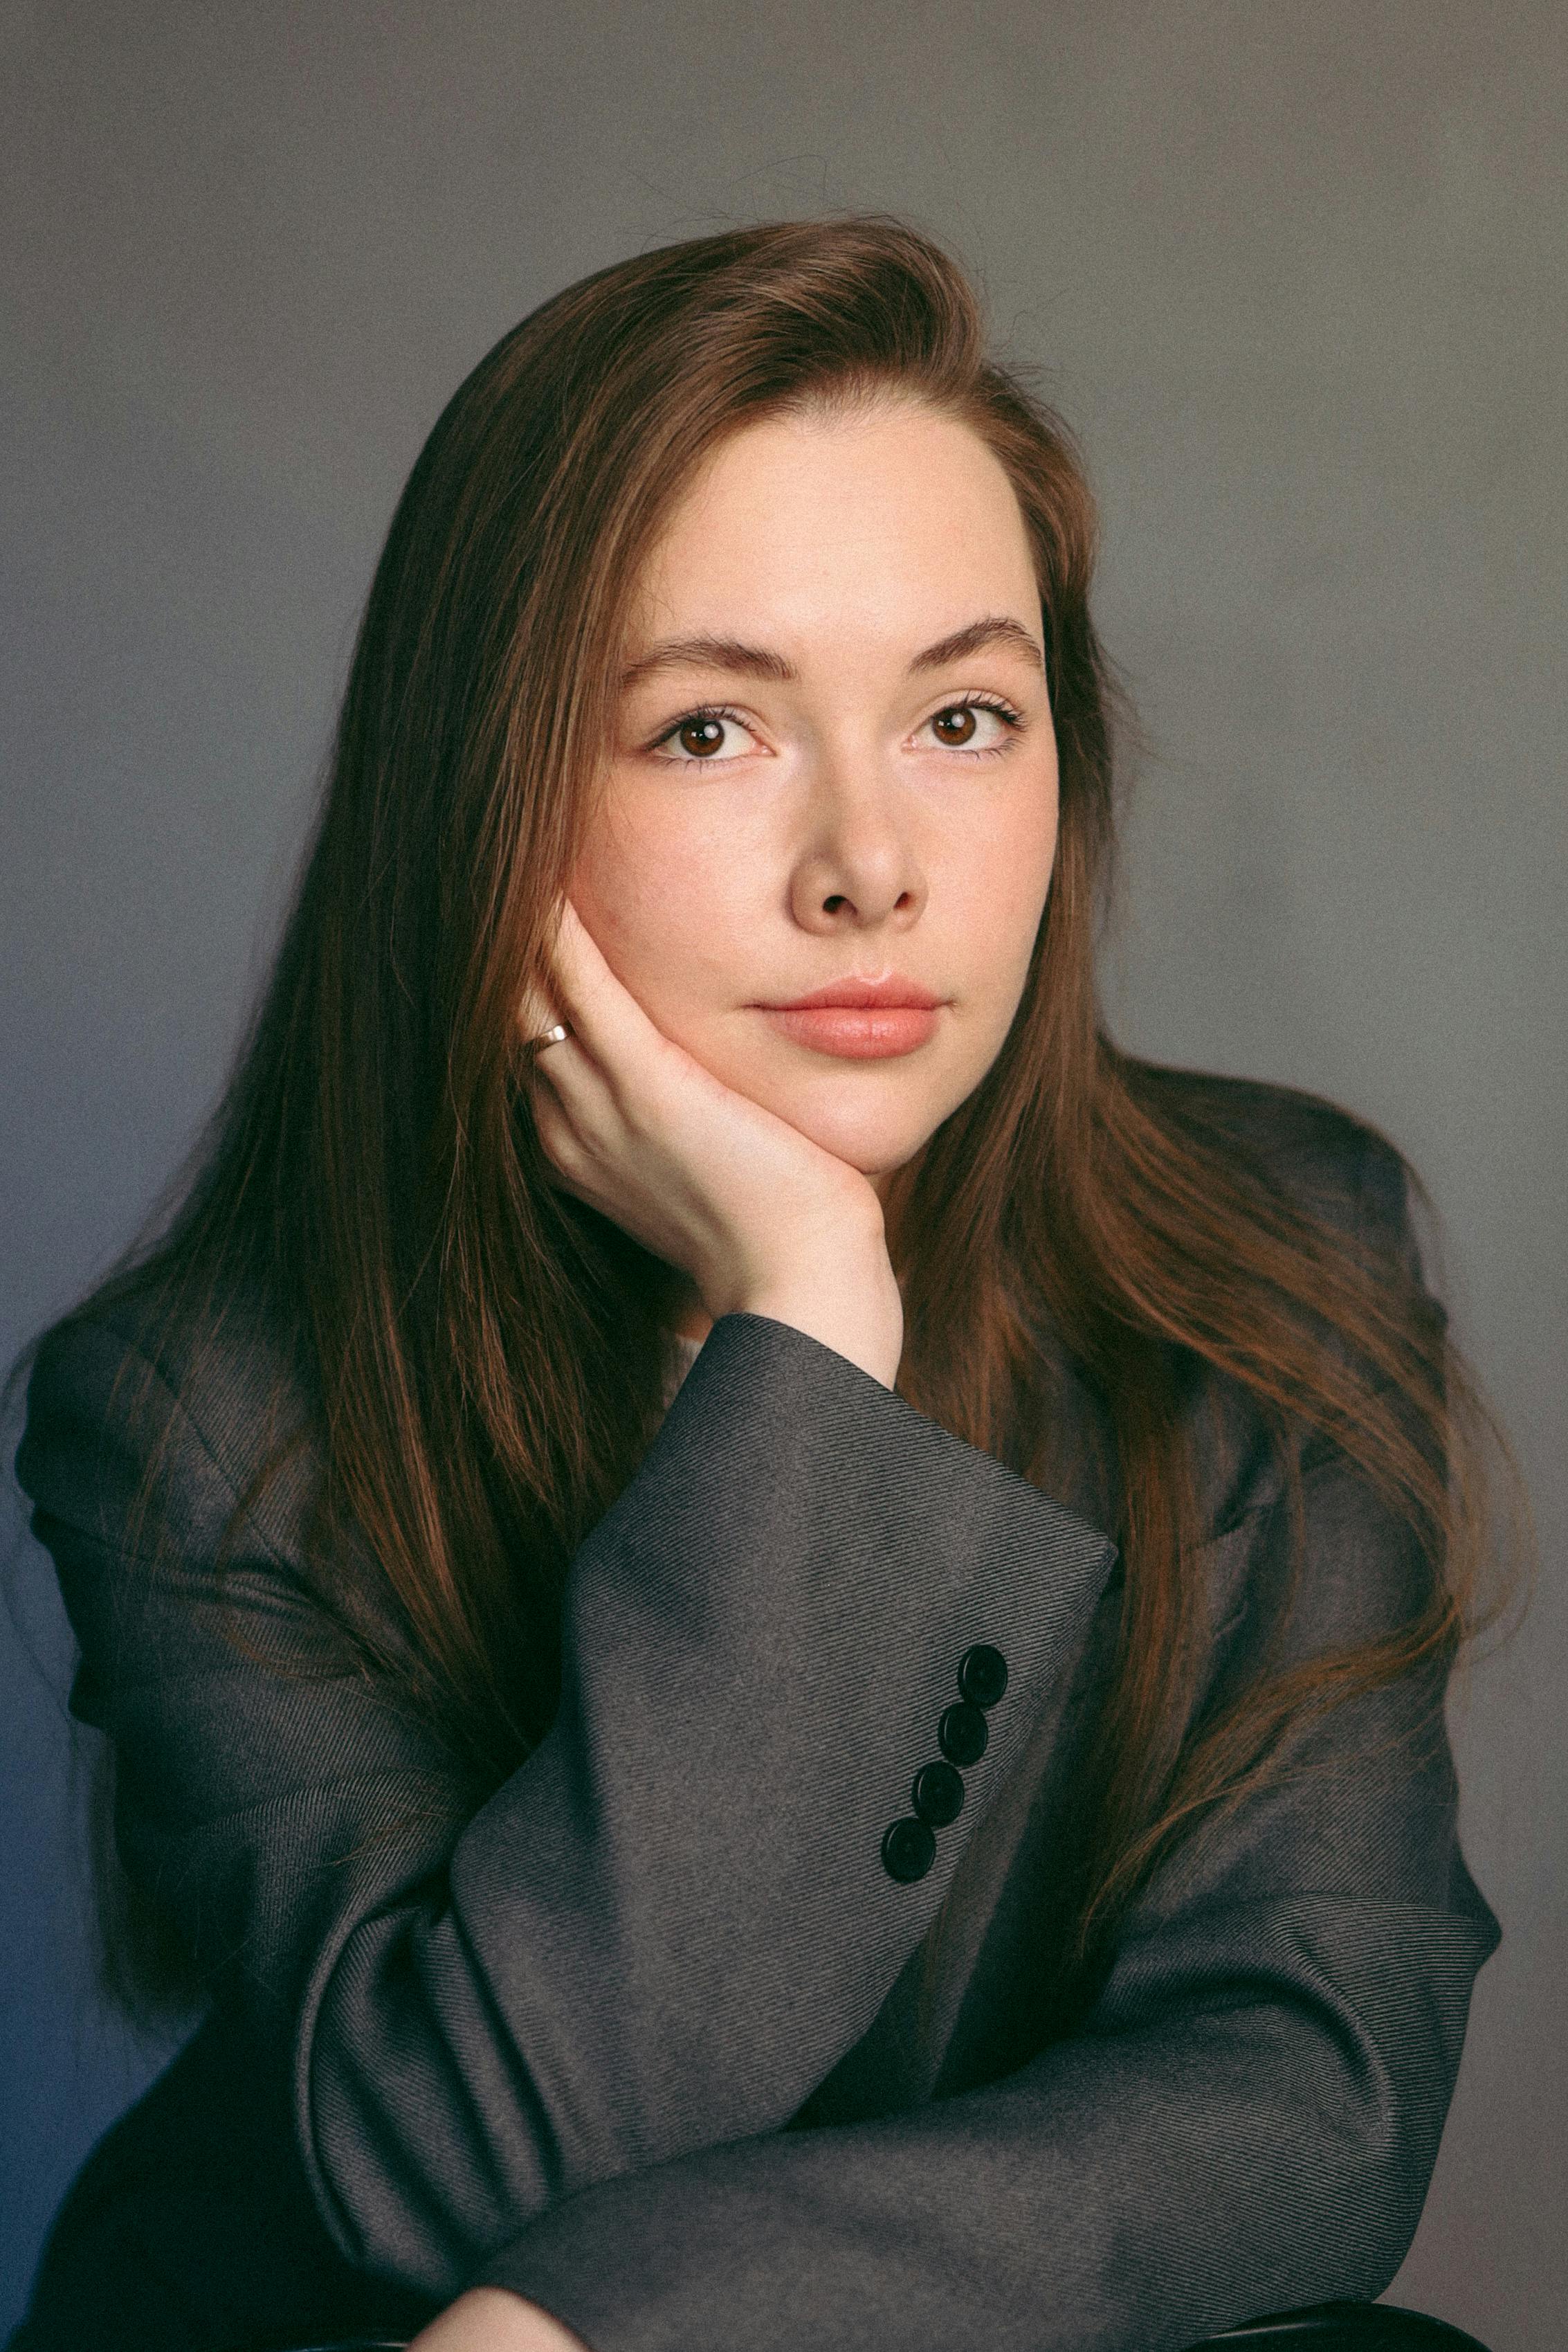 Eine junge Frau posiert für ein Studioporträt | Quelle: Pexels